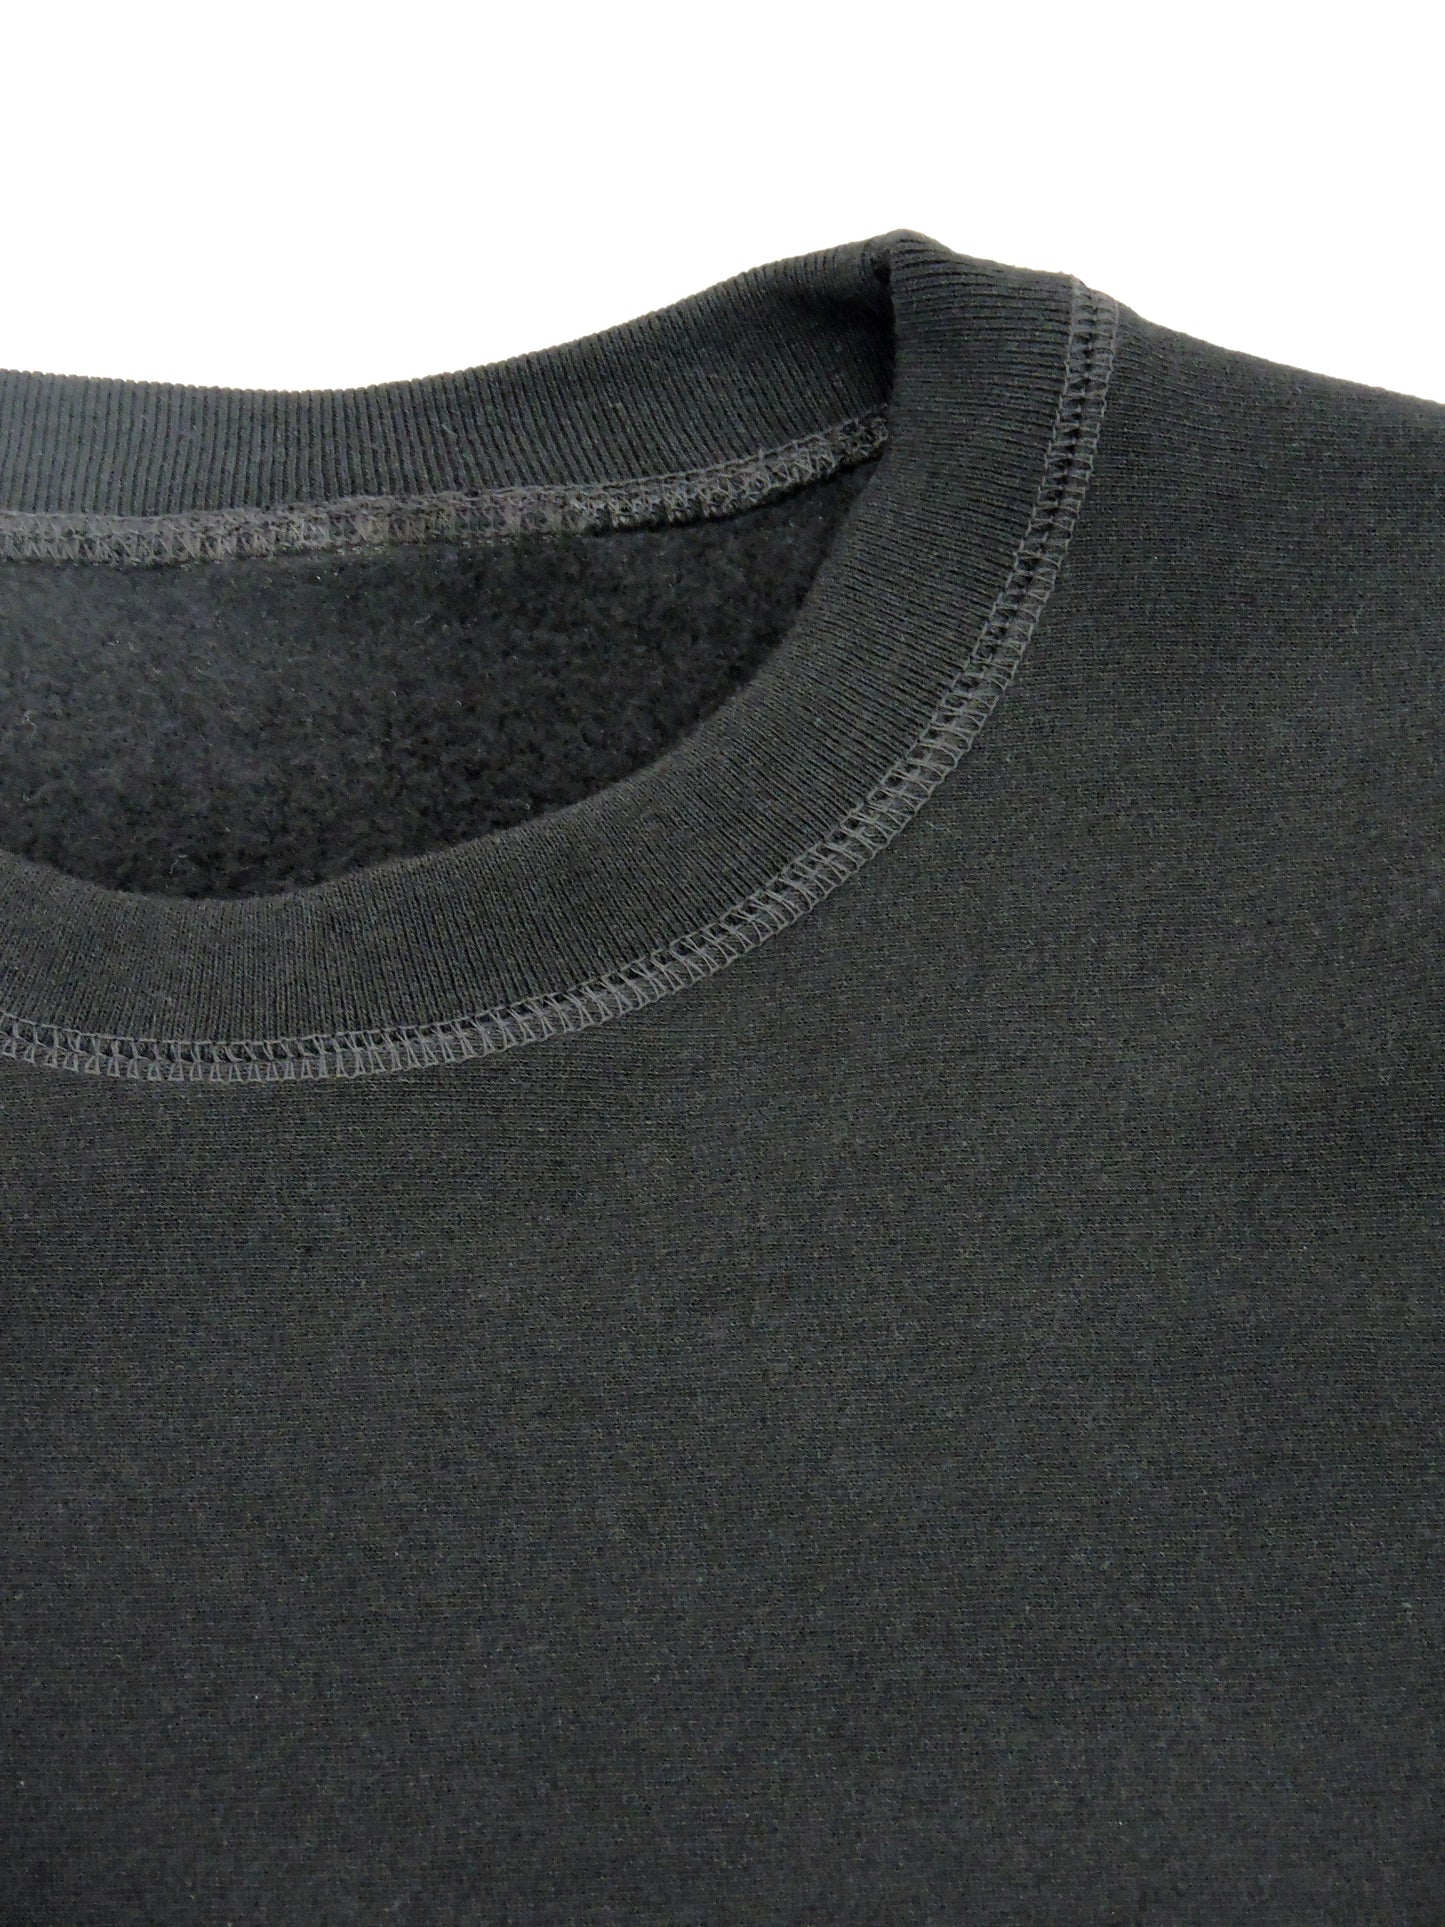 Close up of crewneck collar showing premium fleece material